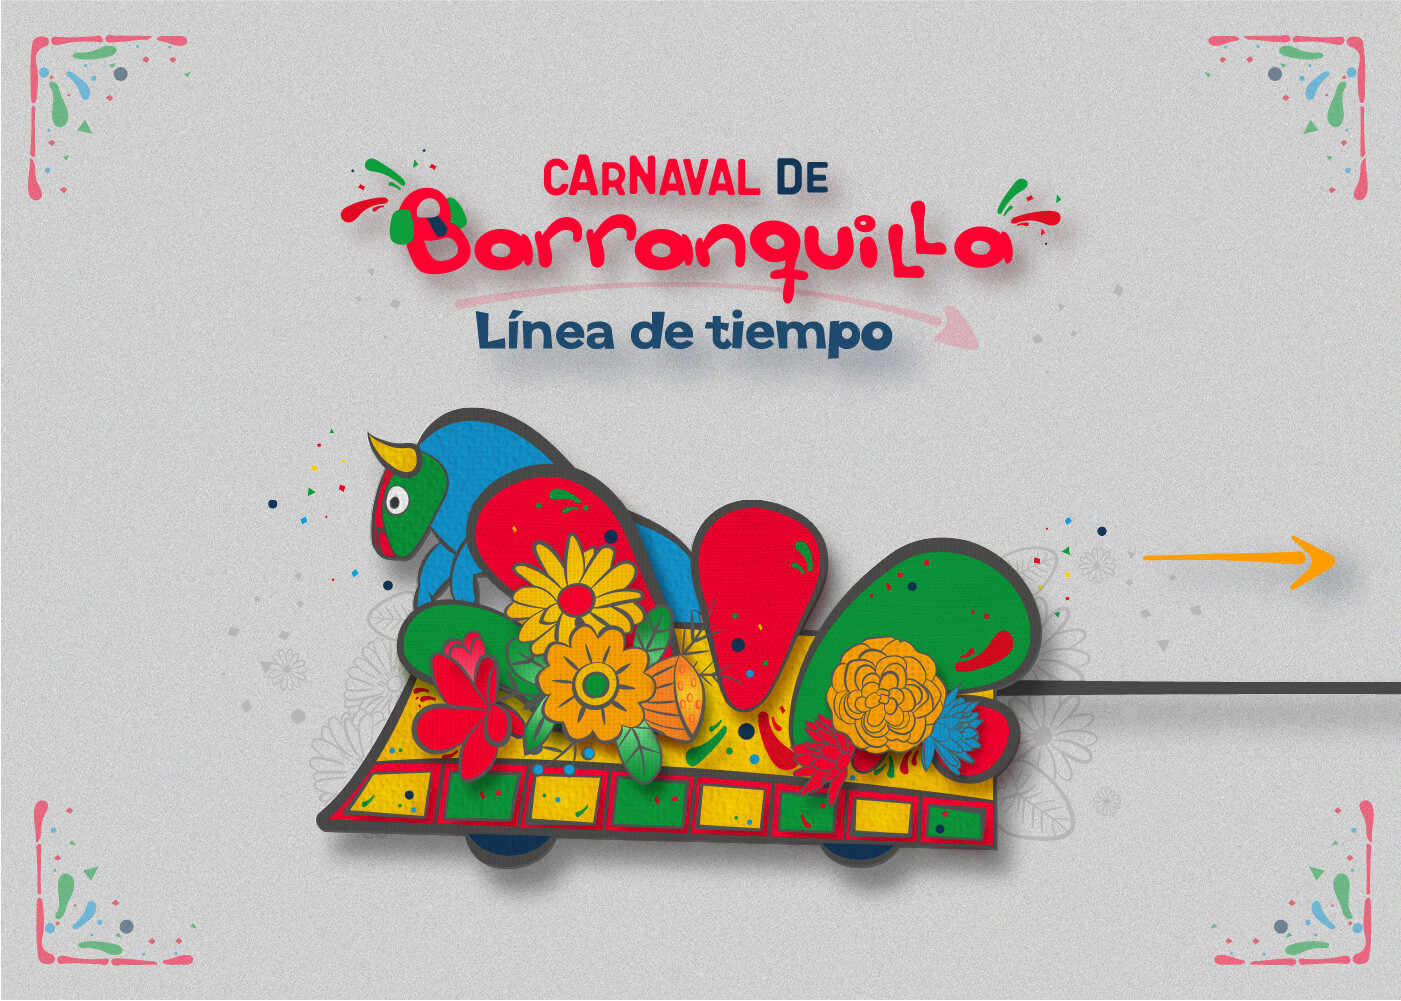 Historia del Carnaval de Barranquilla